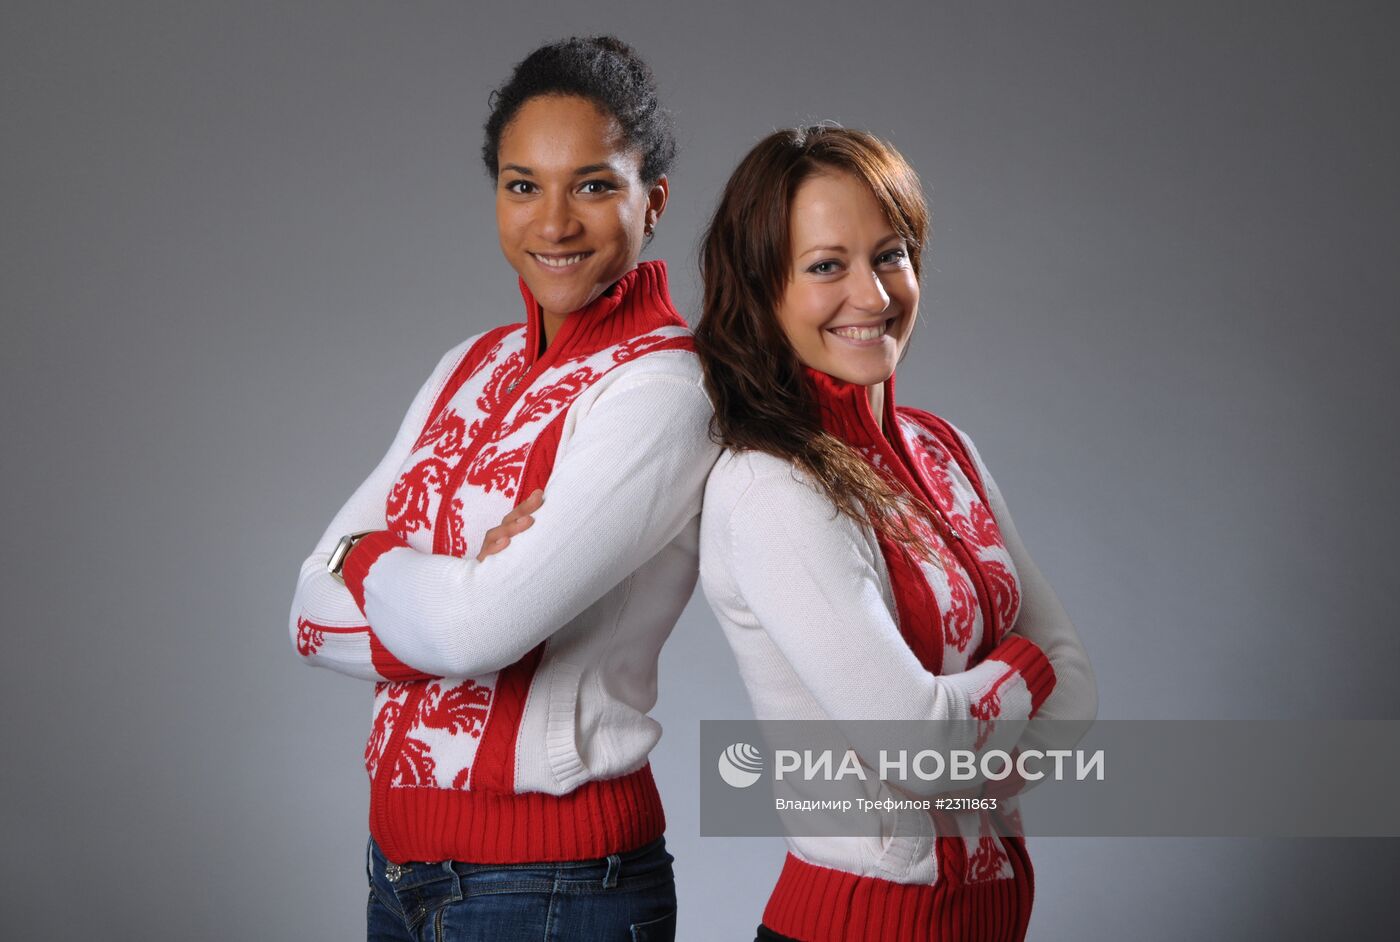 Российские керлингистки Нкеируке Езех и Екатерина Галкина